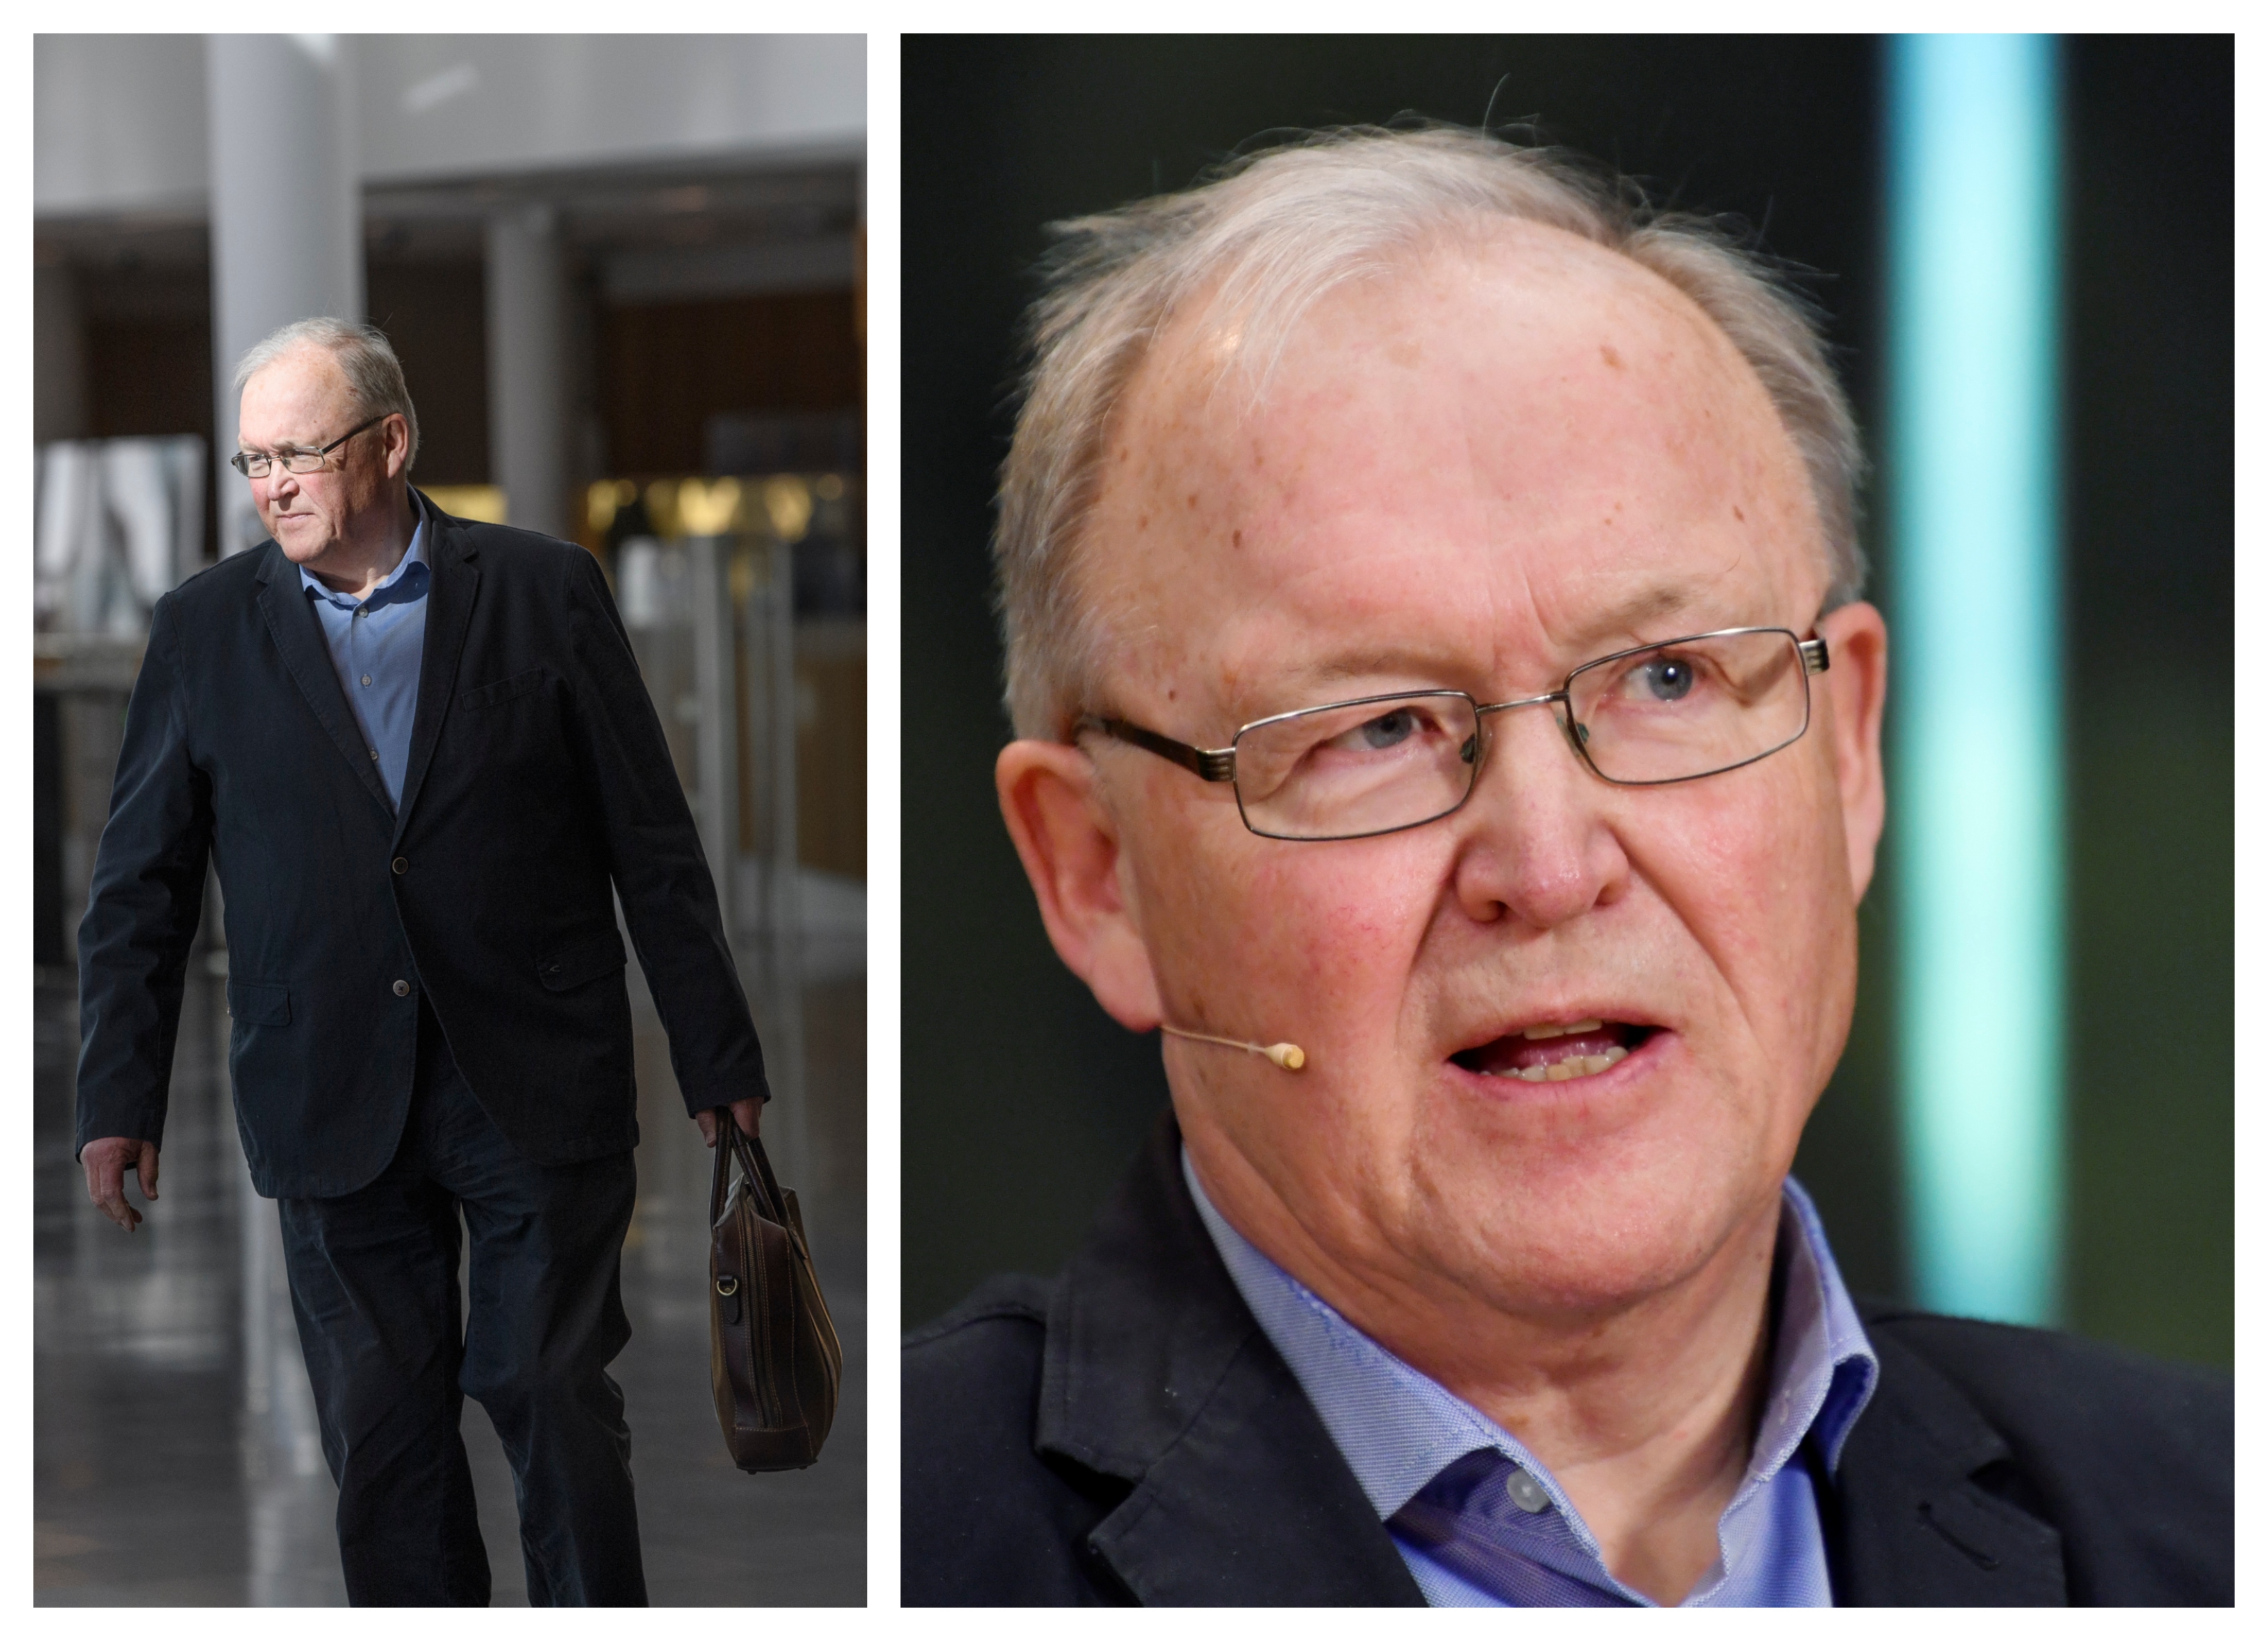 Hur mycket pengar tjänar den tidigare statsministern Göran Persson? Nyheter24 har svaret!